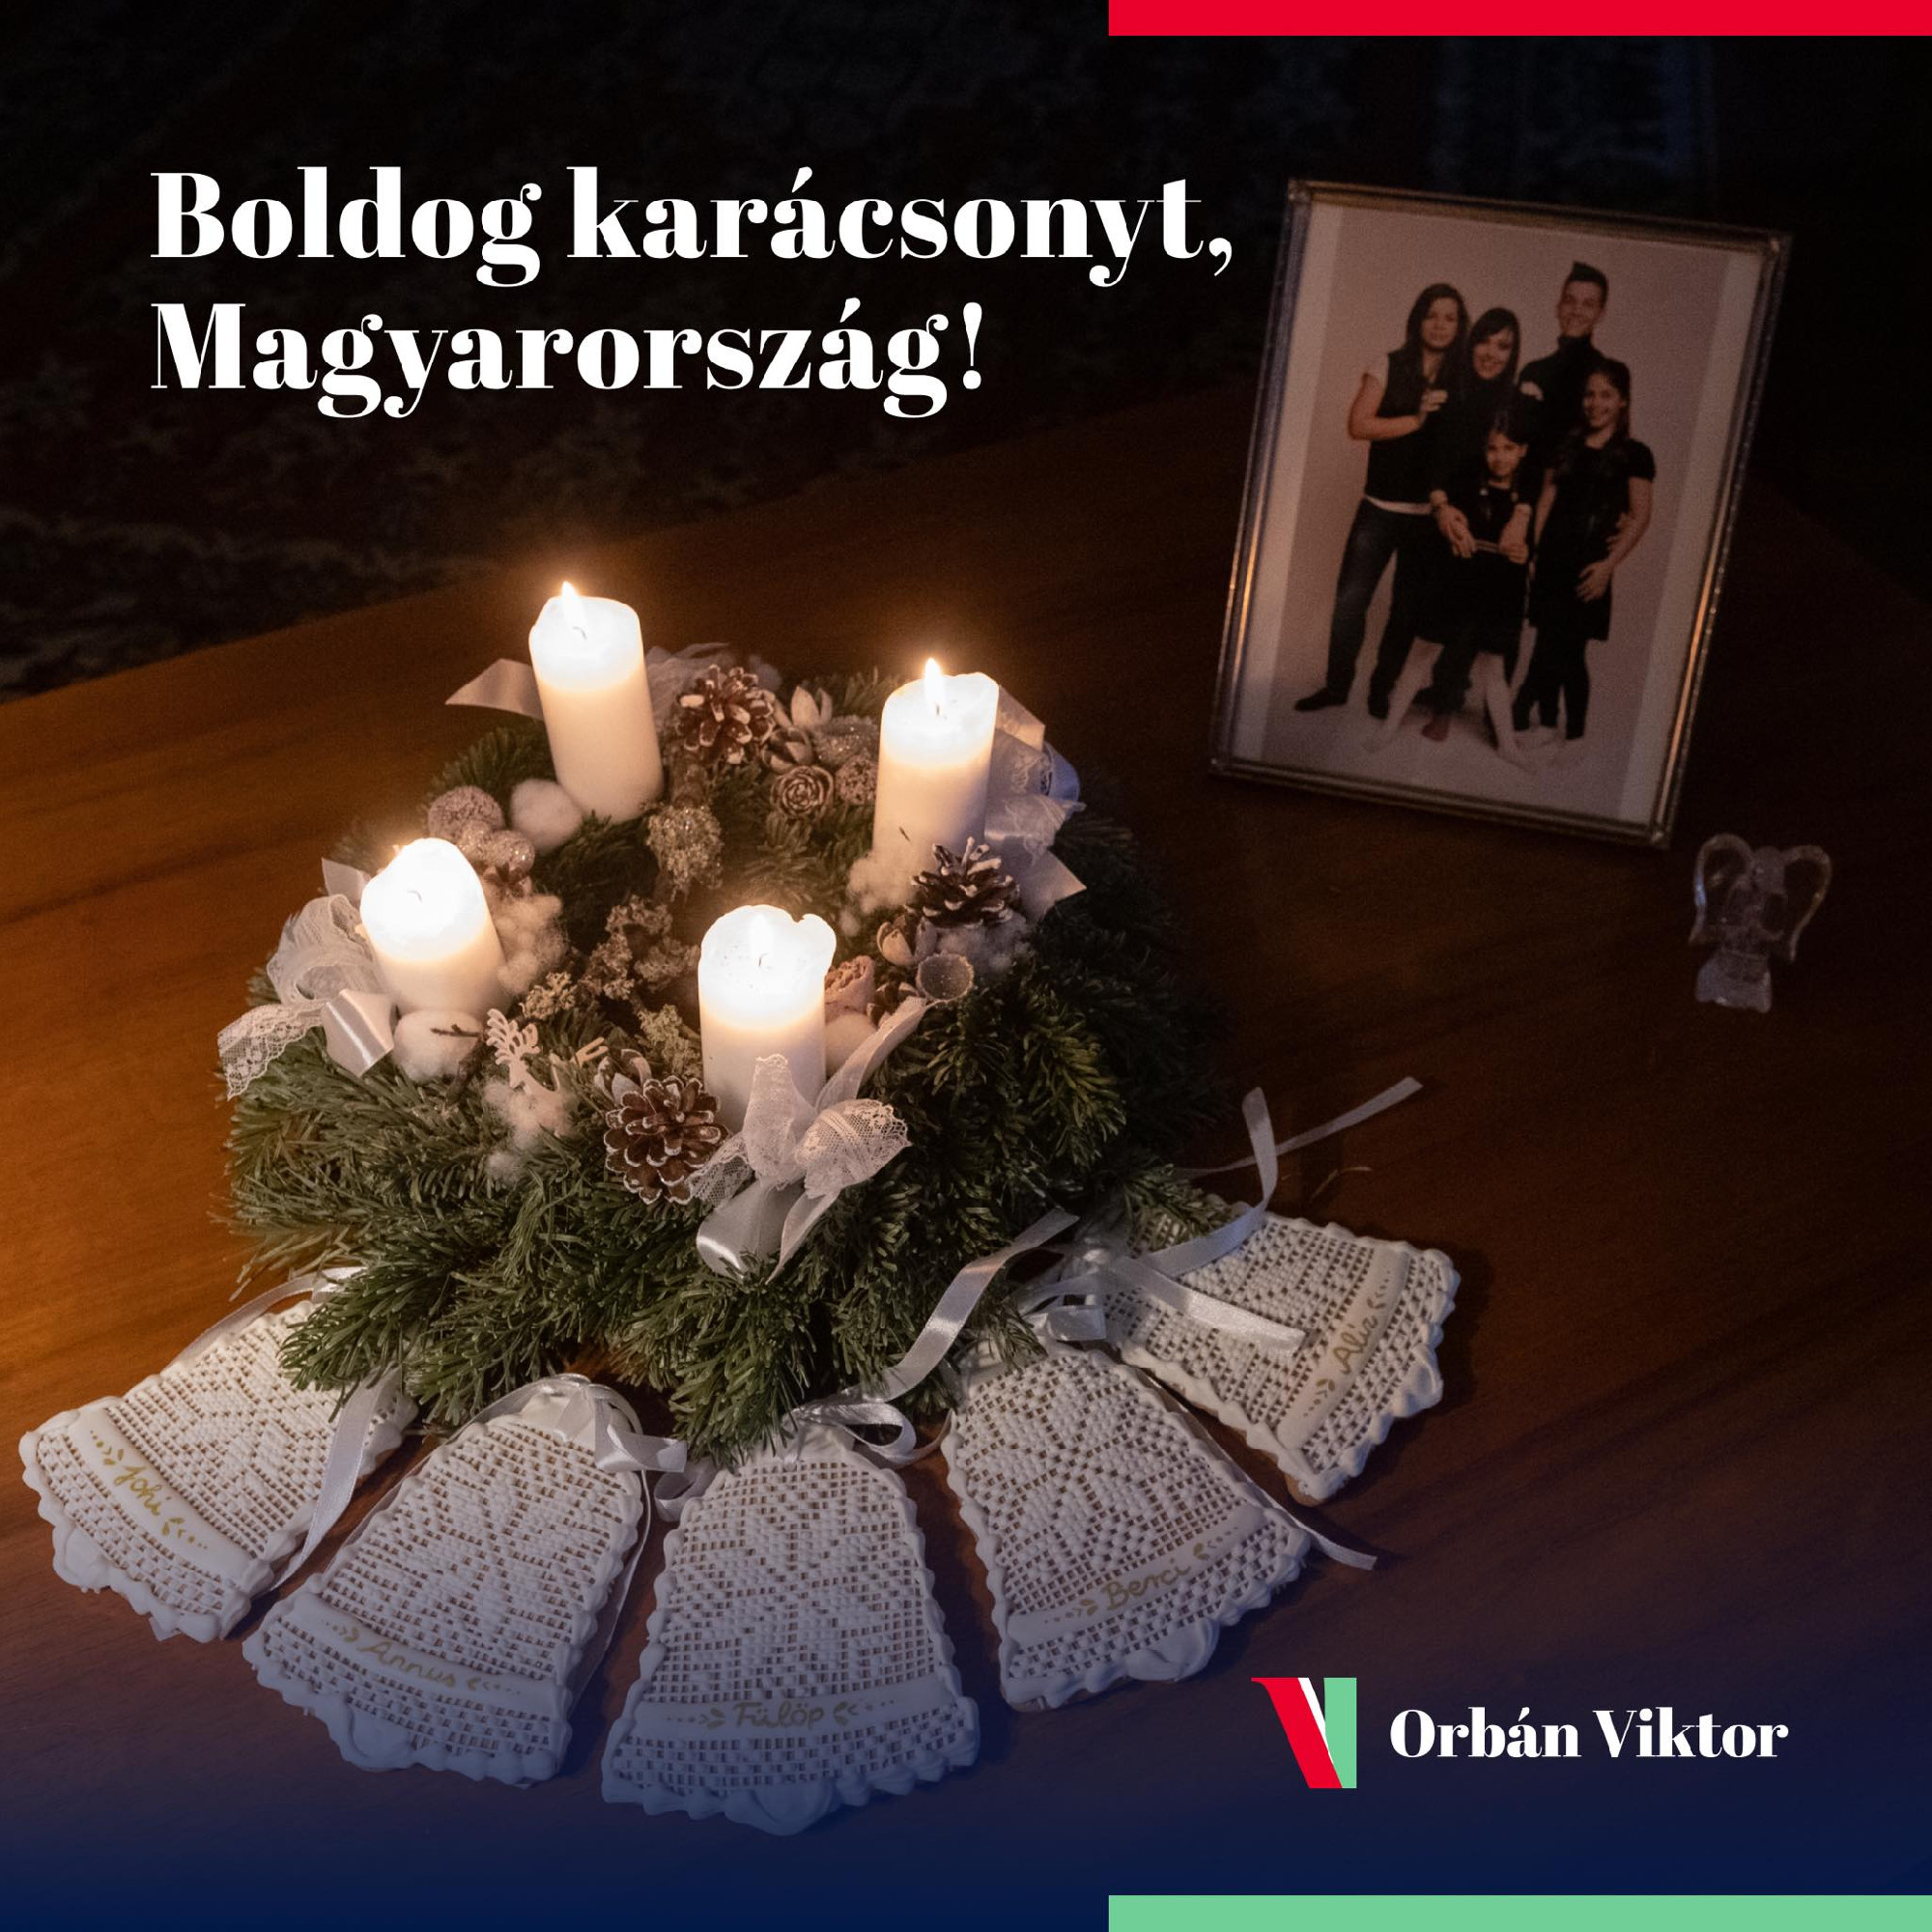 Így kívánt boldog karácsonyt Orbán Viktor 